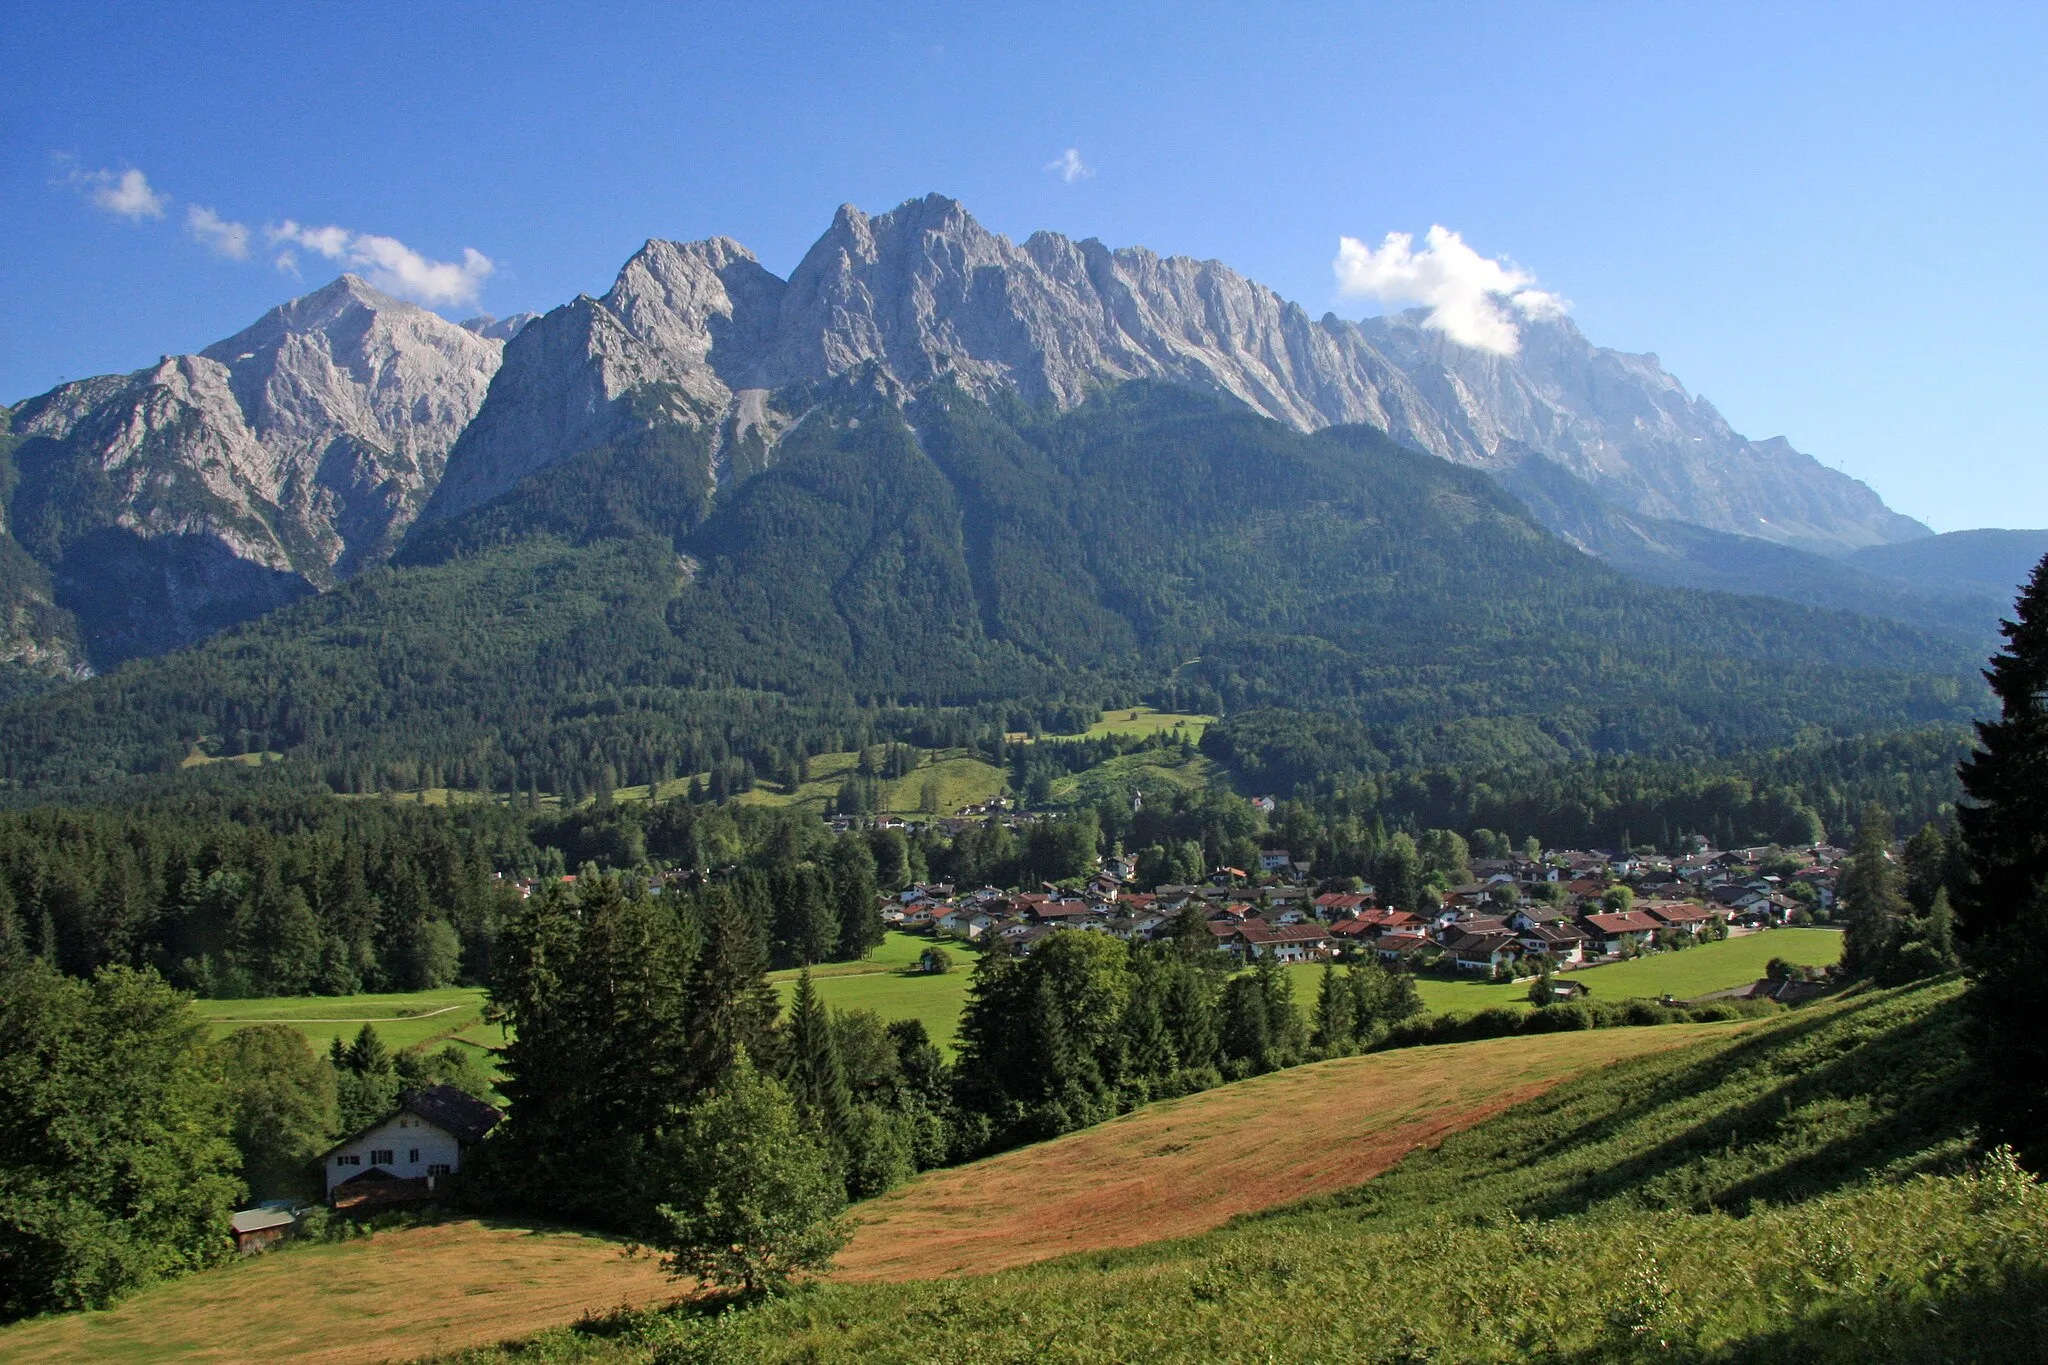 Photo showing: The Bavarian village Grainau with the mountains (from left) Alpspitze, kleiner Waxenstein, großer Waxenstein and Zugspitze in the background